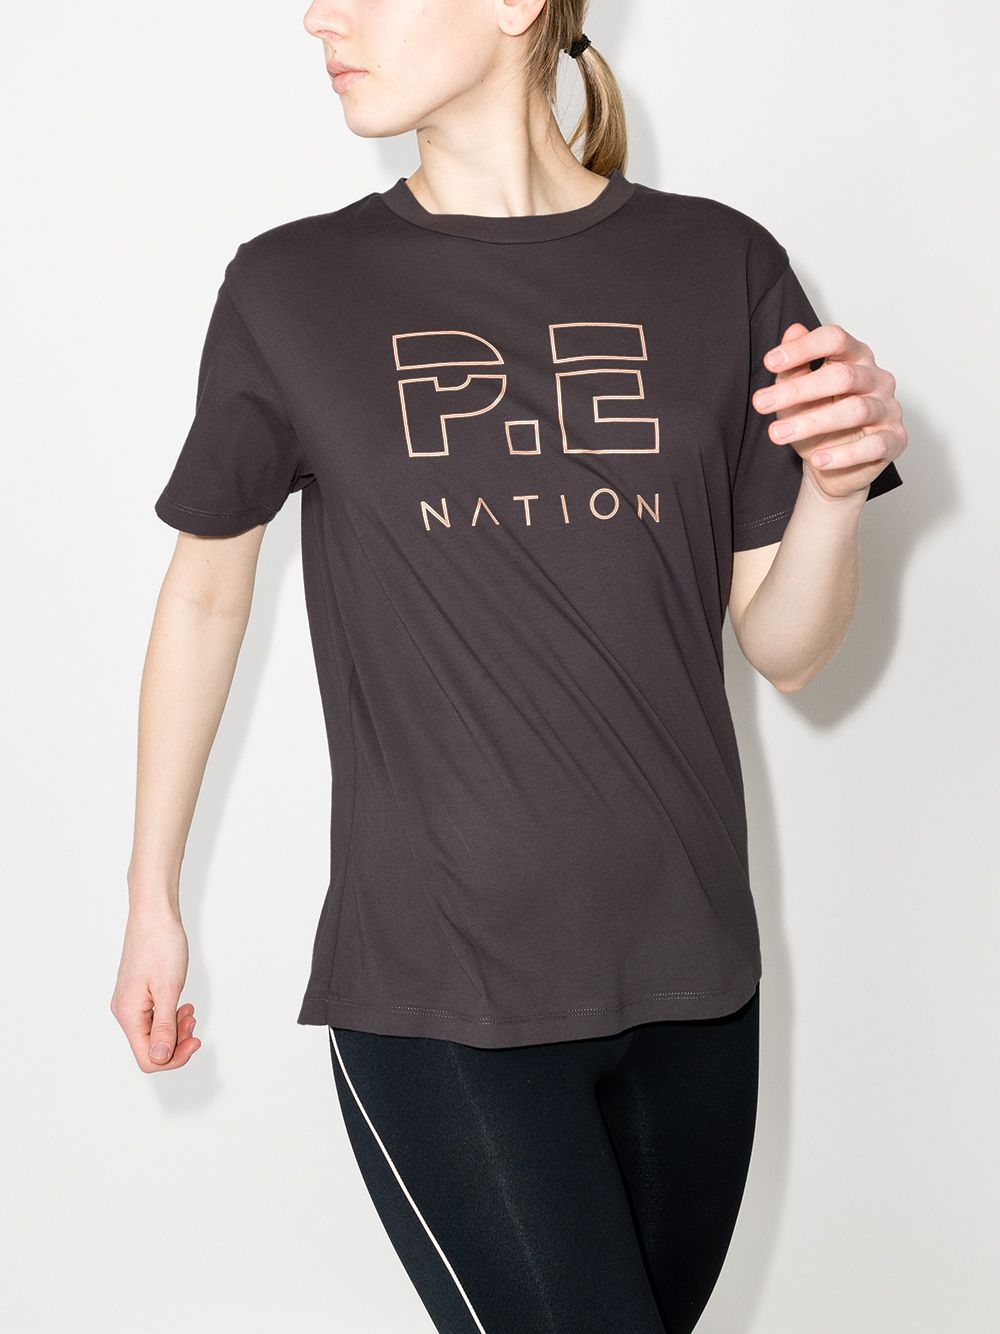 фото P.e nation спортивная футболка heads up